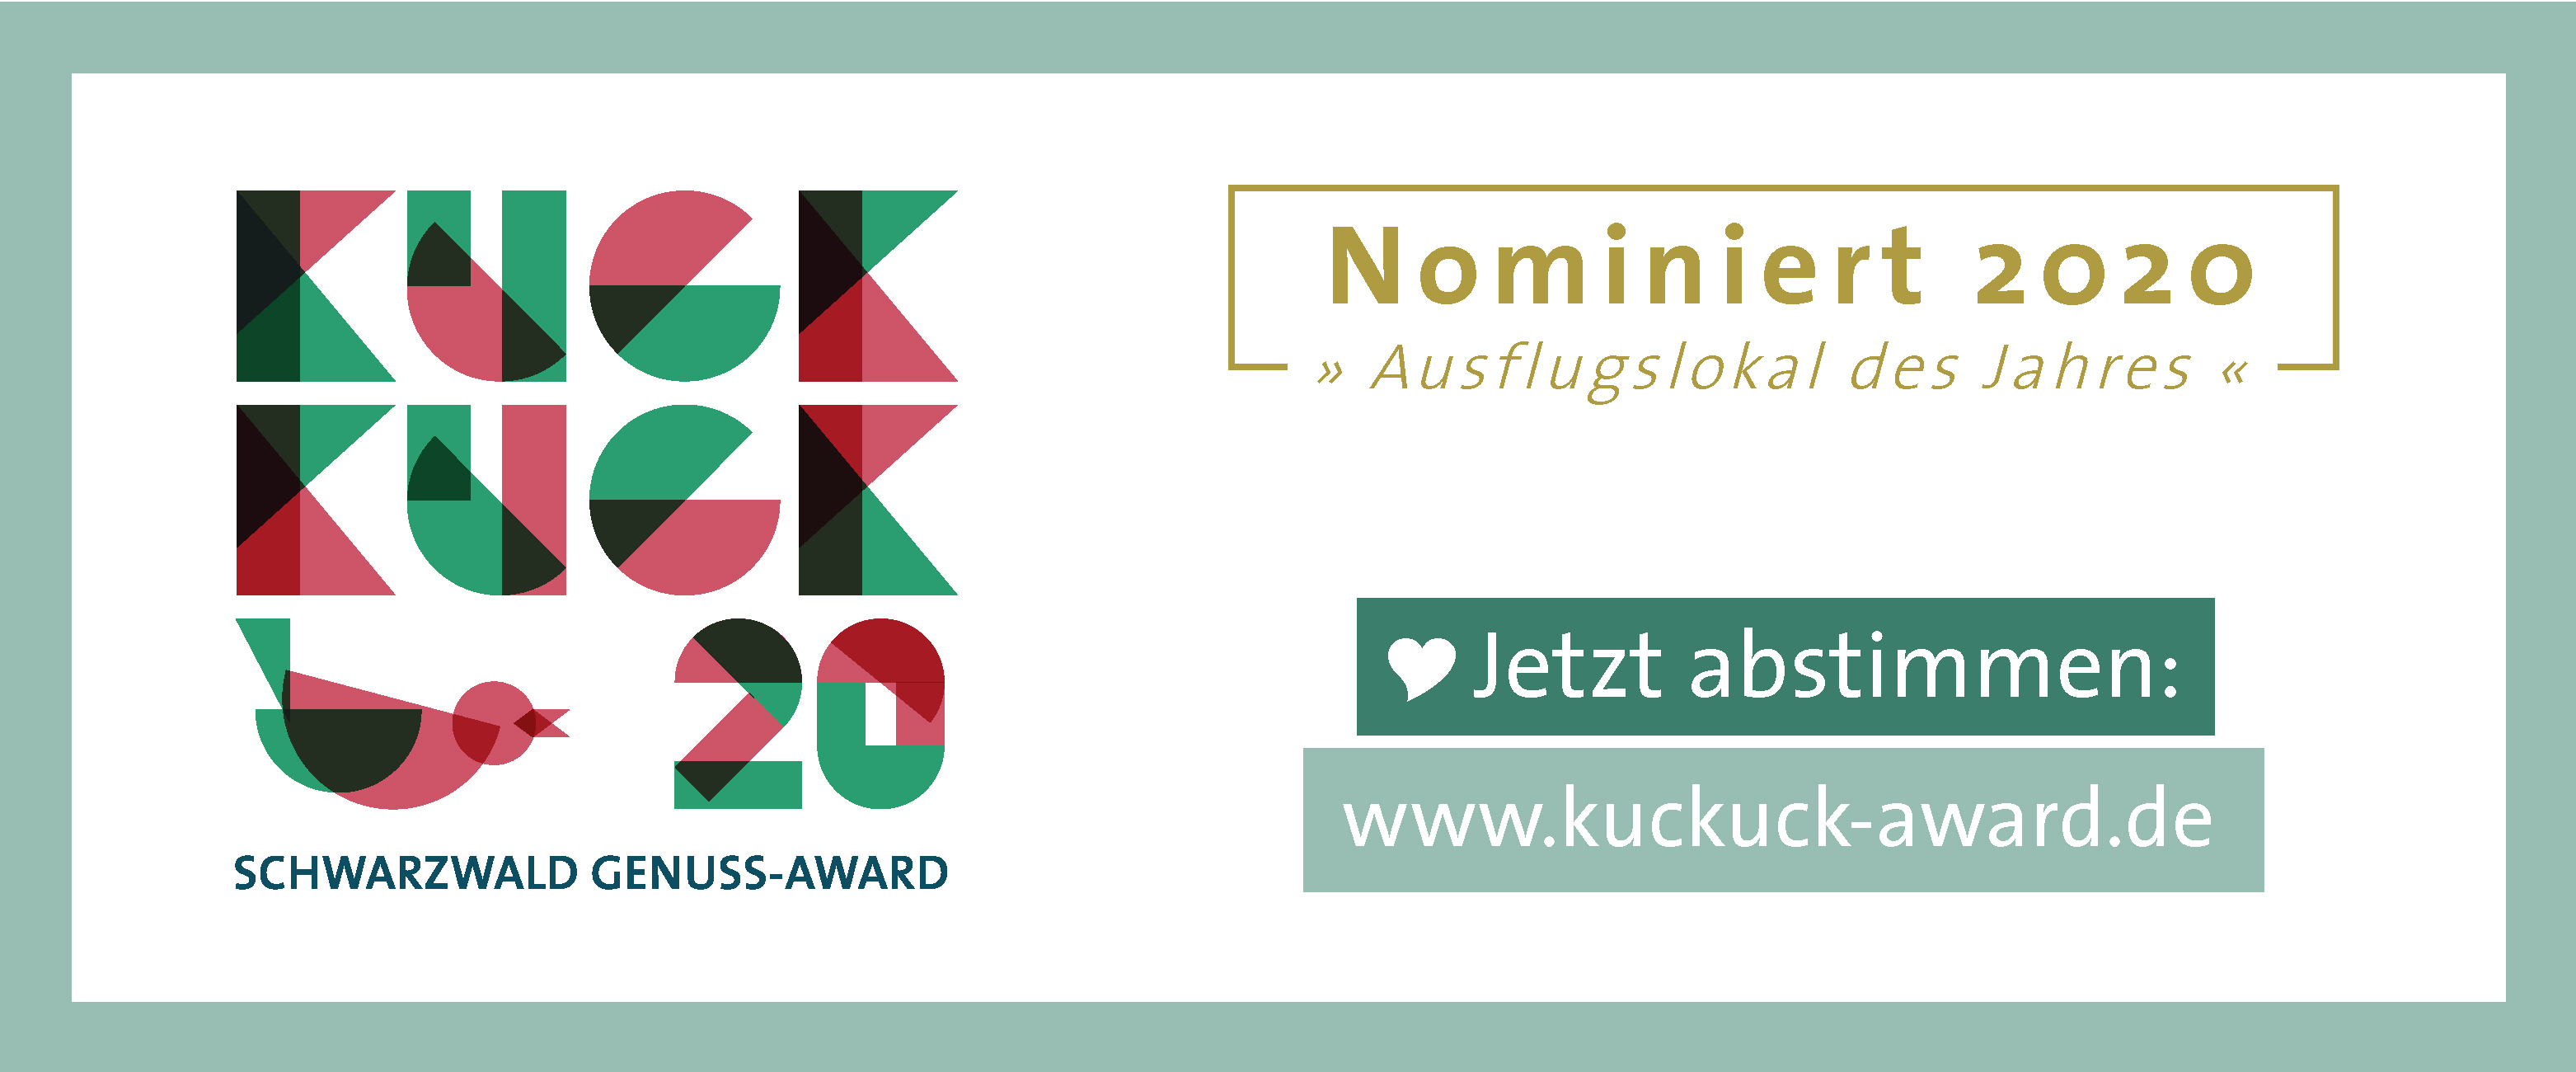 Kuckkuck-Award